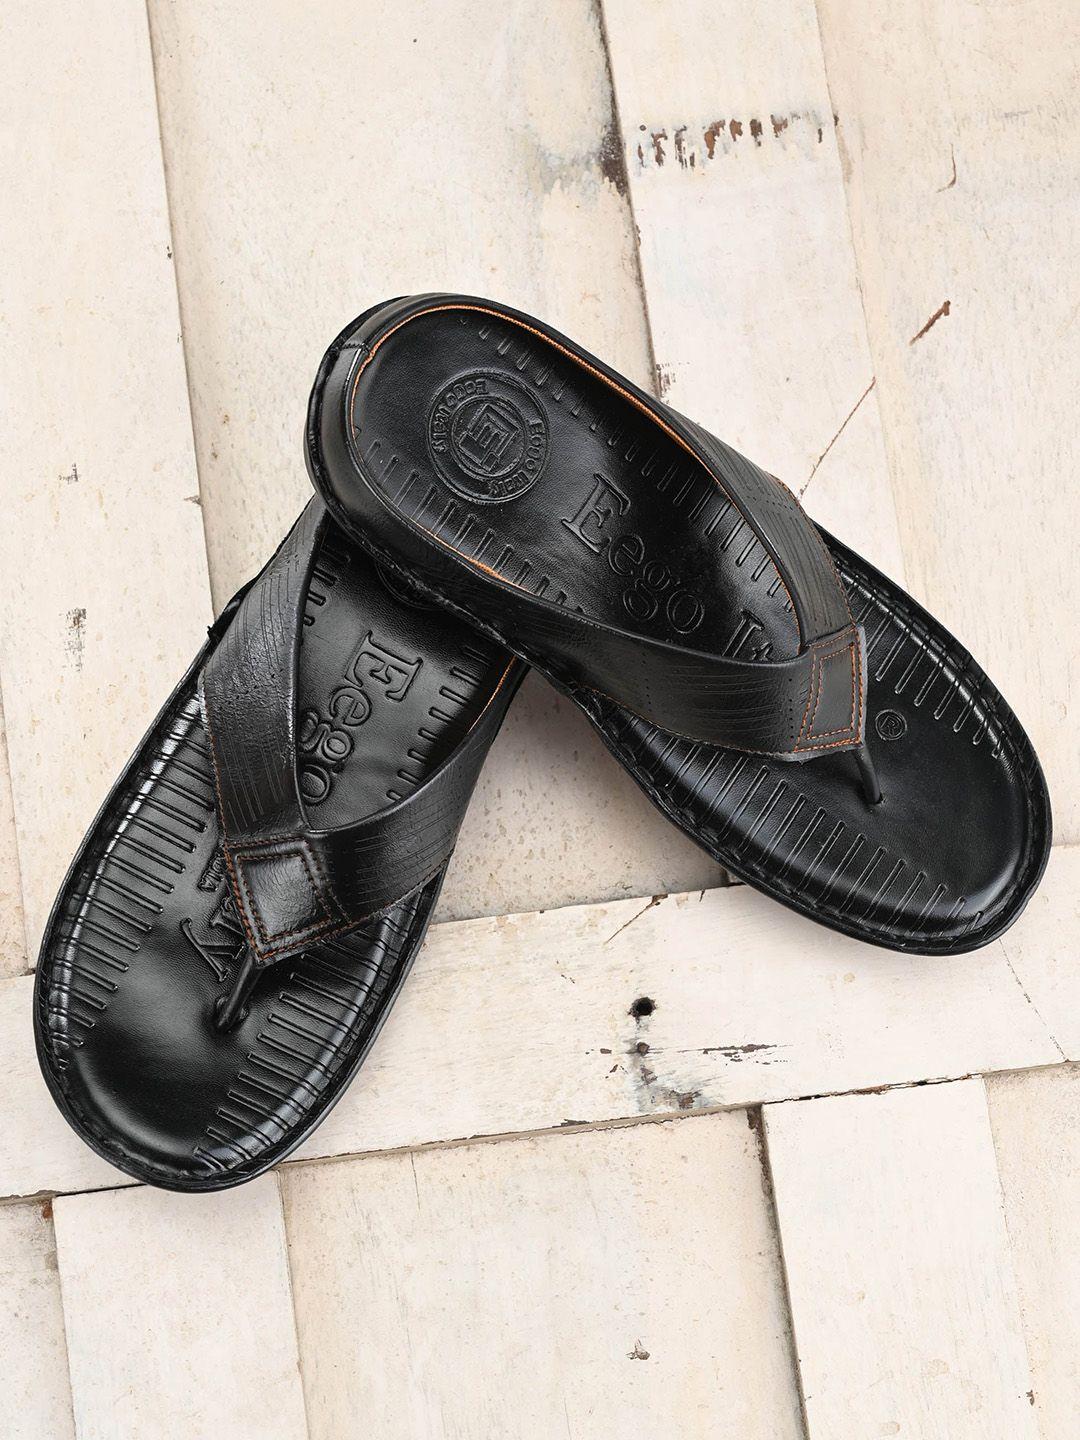 eego italy men comfort sandals